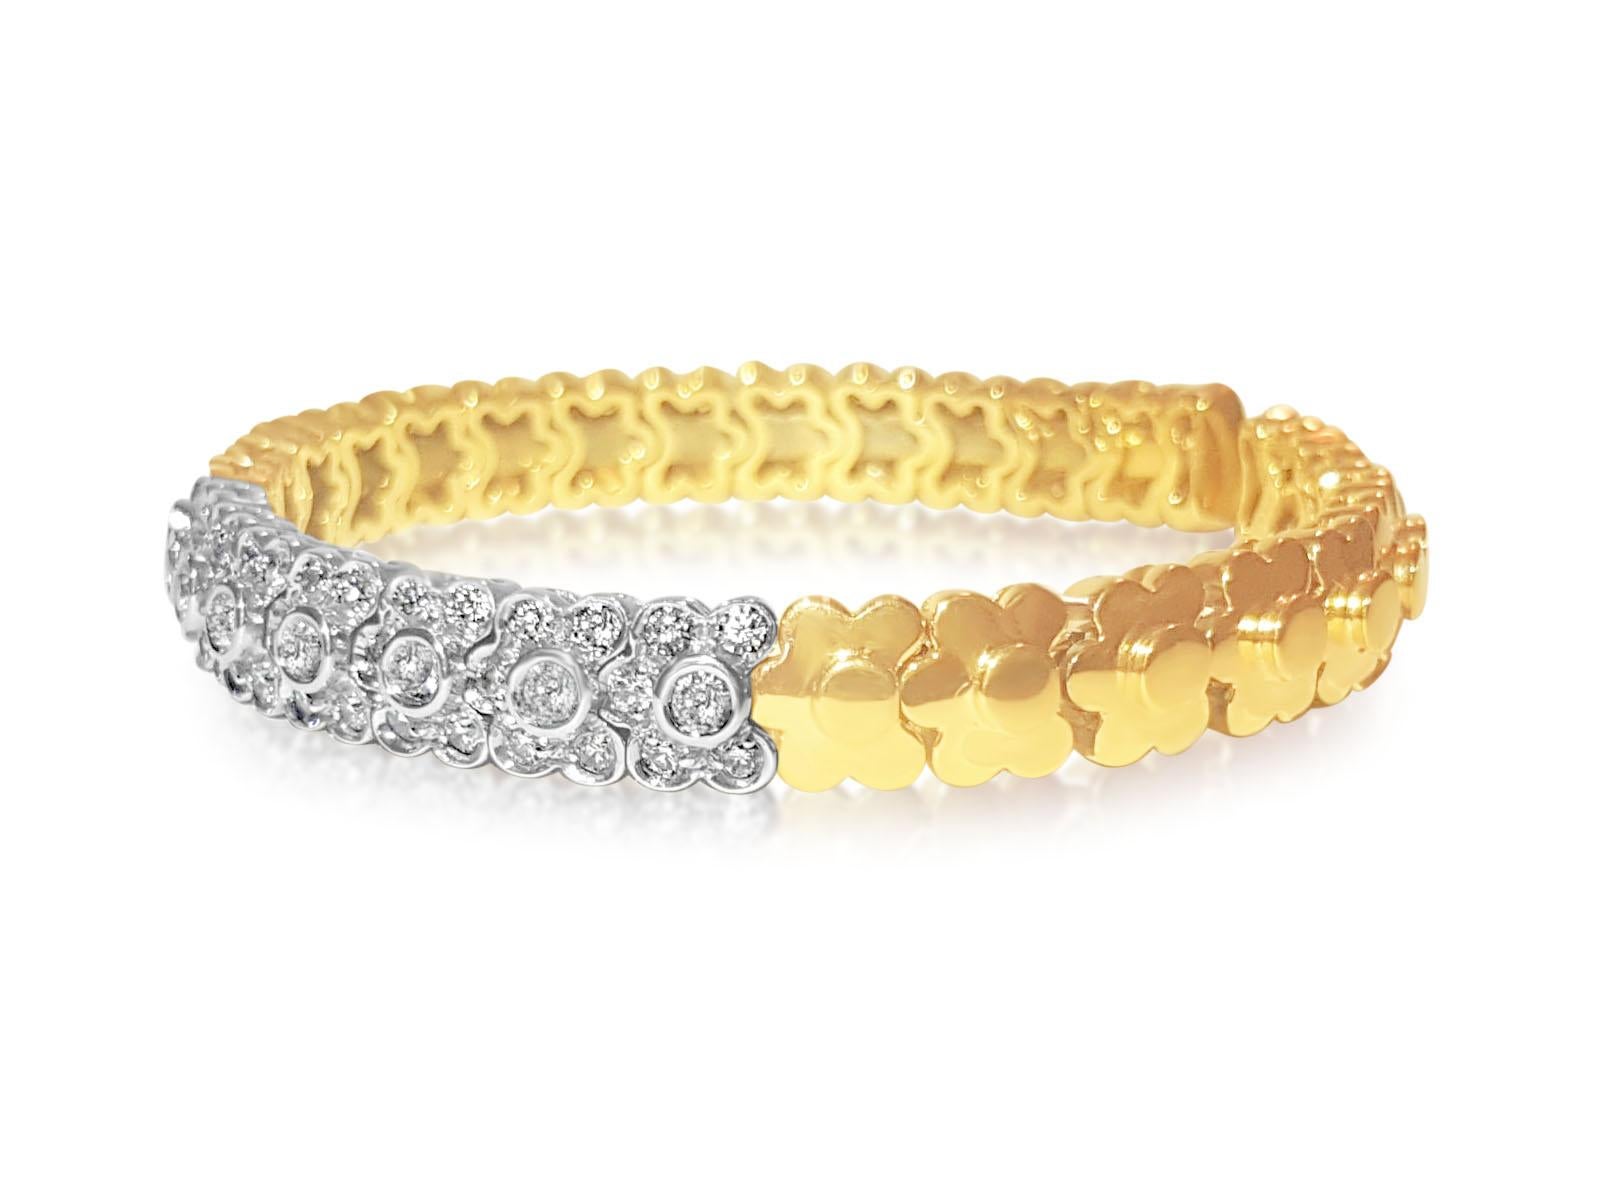 Gönnen Sie sich exquisiten Luxus mit unserem 14K Gelbgold Diamantring der renommierten Marke SONIA B. Mit 4,00 Karat schillernden runden Diamanten im Brillantschliff, jeder mit VS Reinheit und G Farbe, strahlt dieses Stück Opulenz aus. Der vom GIA